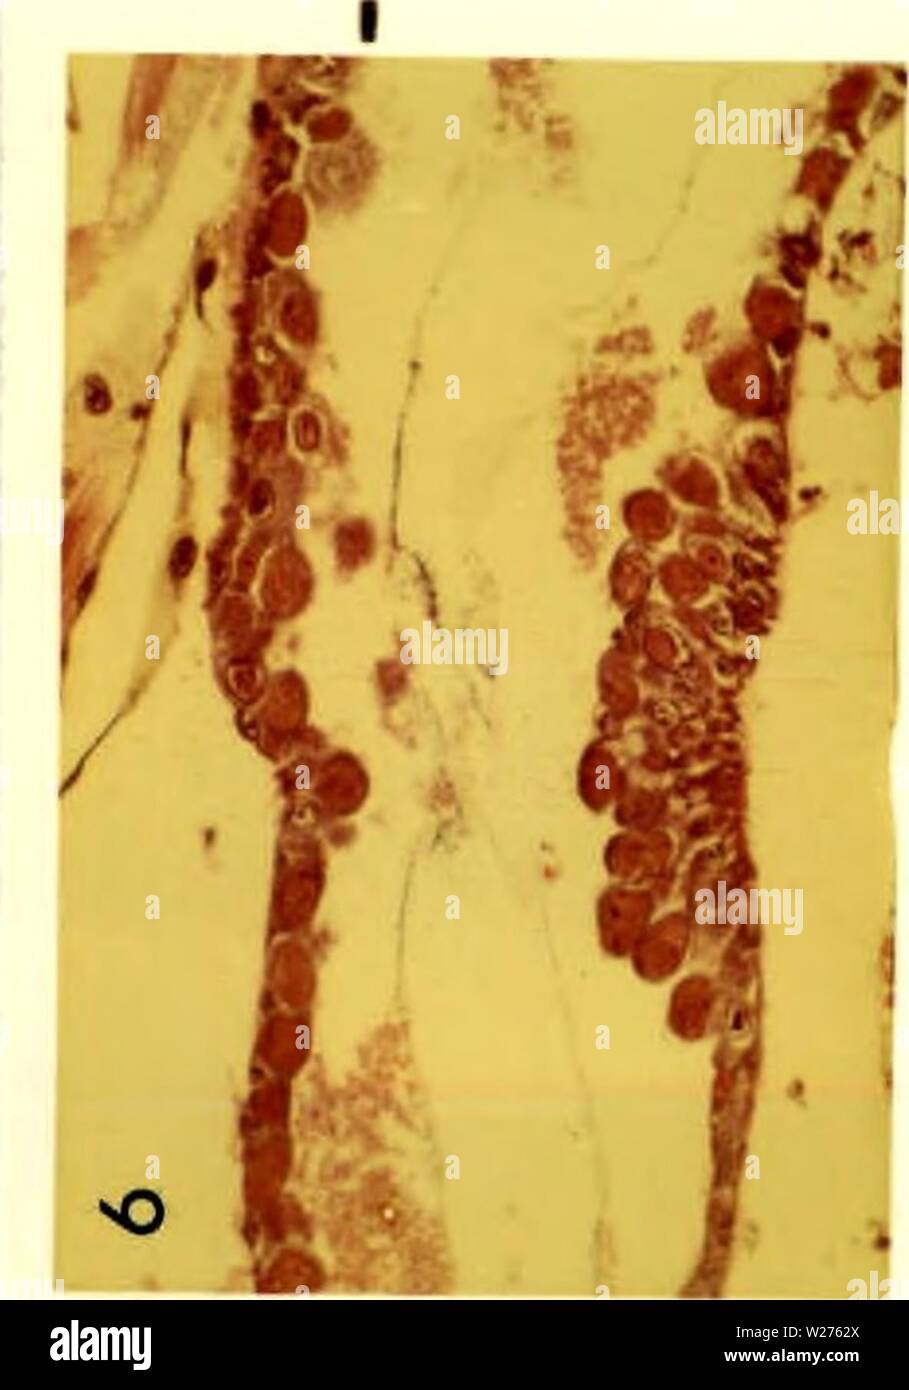 Immagine di archivio da pagina 42 di citopatologia di poliedrosi nucleare. Citopatologia di nuclear polyhedrosis virus in Aedes triseriatus (diciamo) cytopathologyofn00federich Anno: 1970 30 Foto Stock